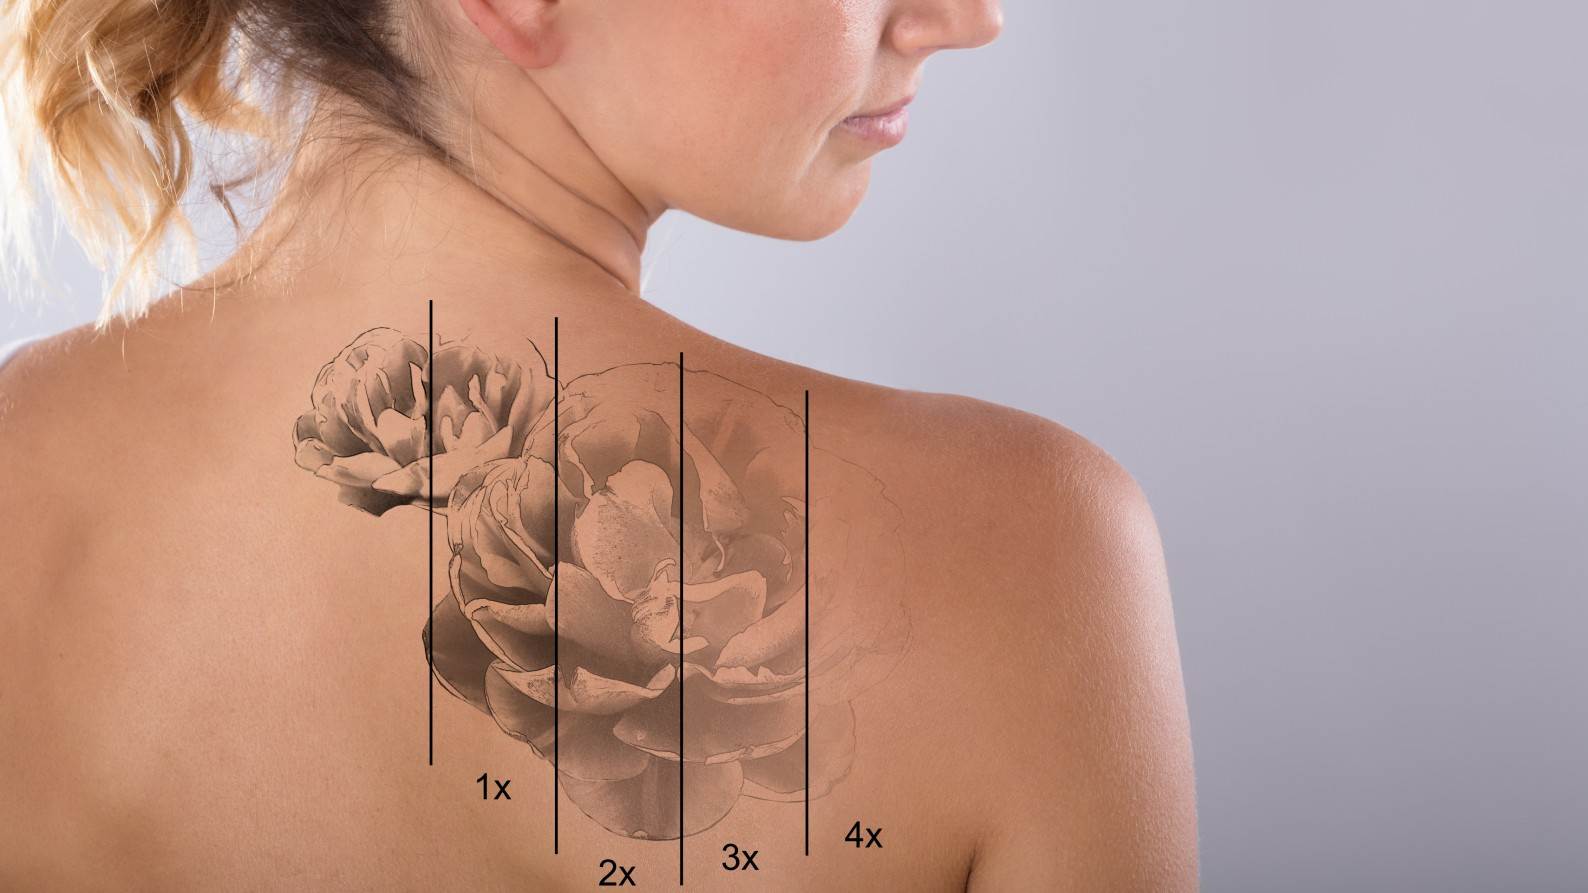 Tattoo entfernen lassen Laser Tattooentfernung Dauer Schmerzen